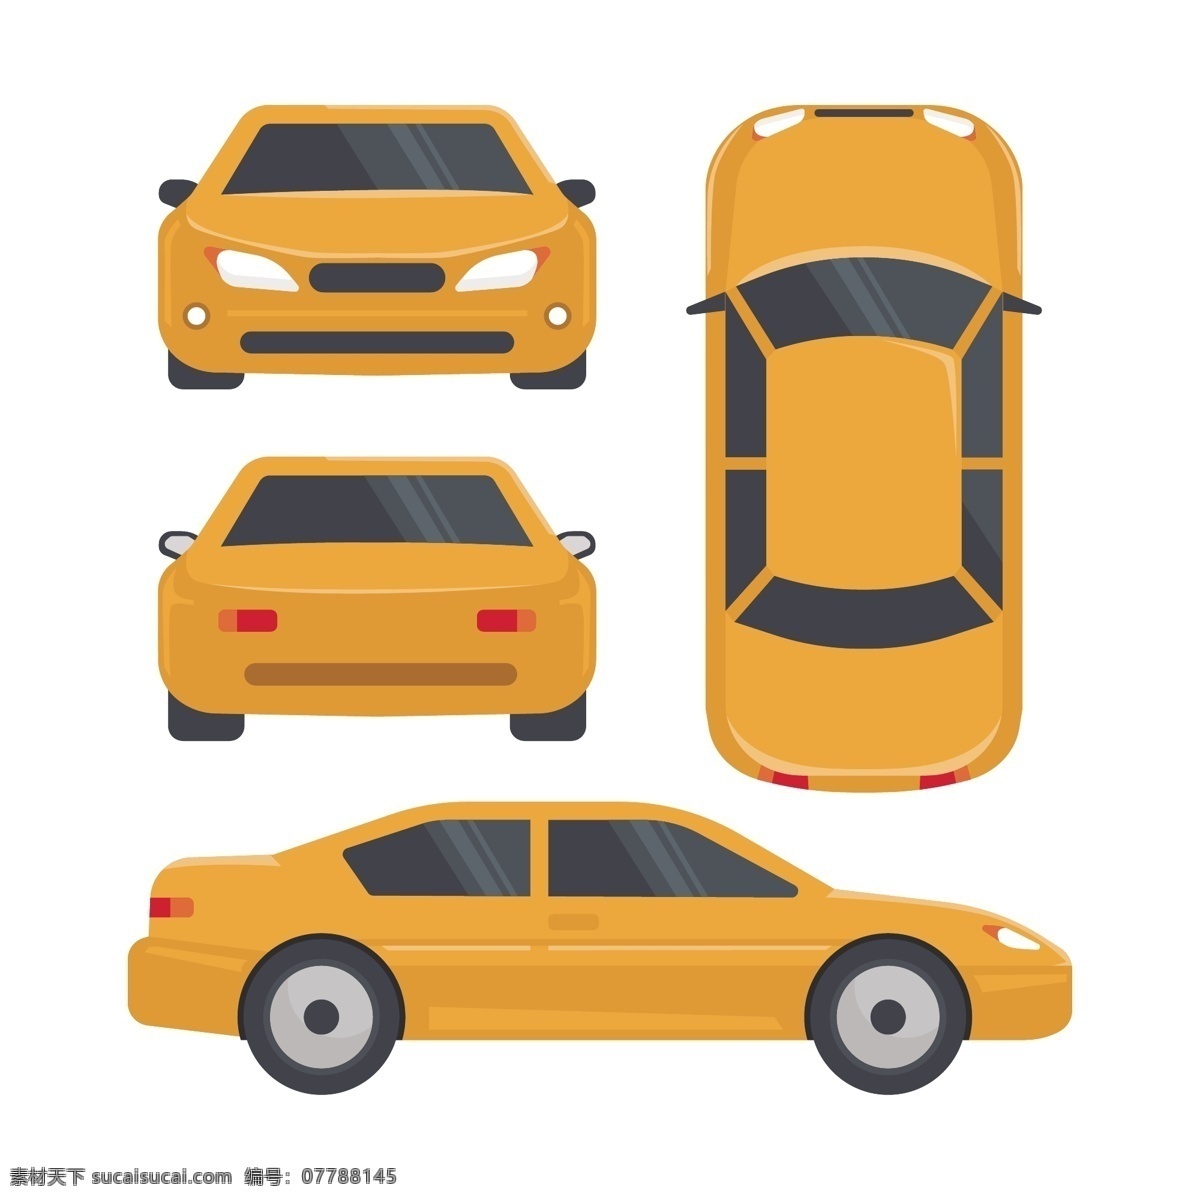 黄色 卡通 小轿车 车 交通工具 轿车 汽车 汽车文化 设计素材 设计元素 矢量素材 条车